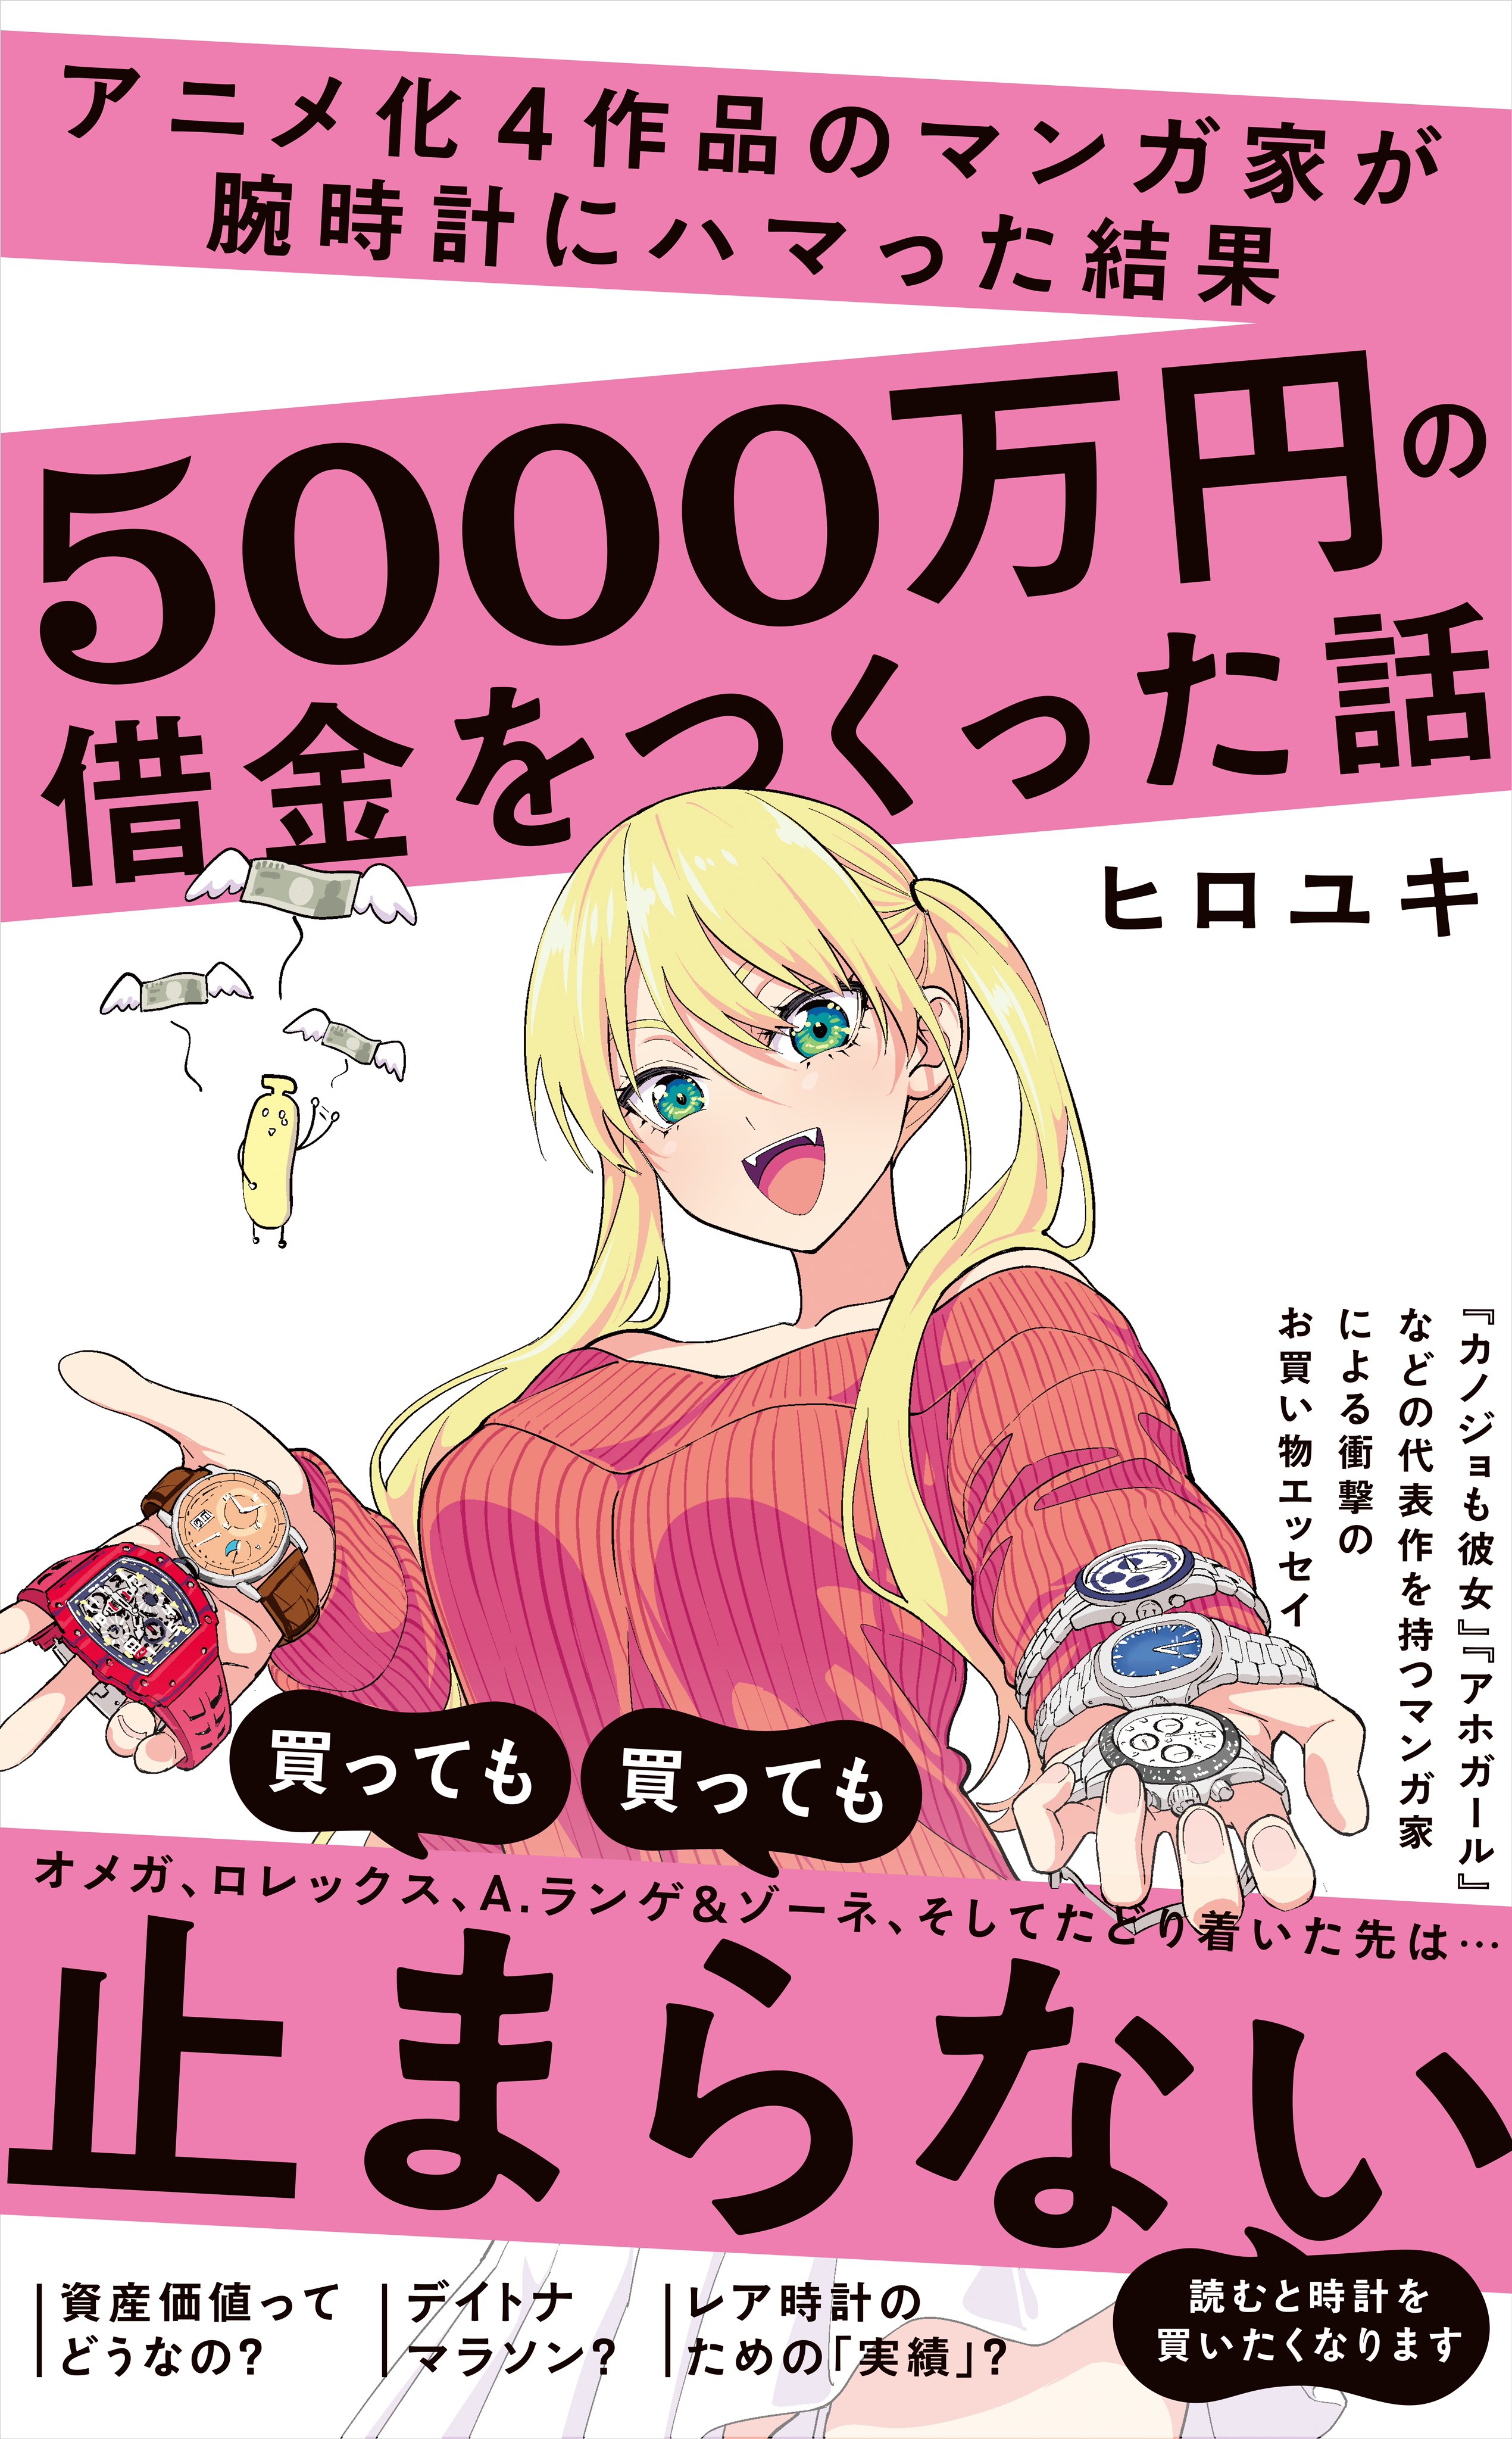 hiroyuki manga